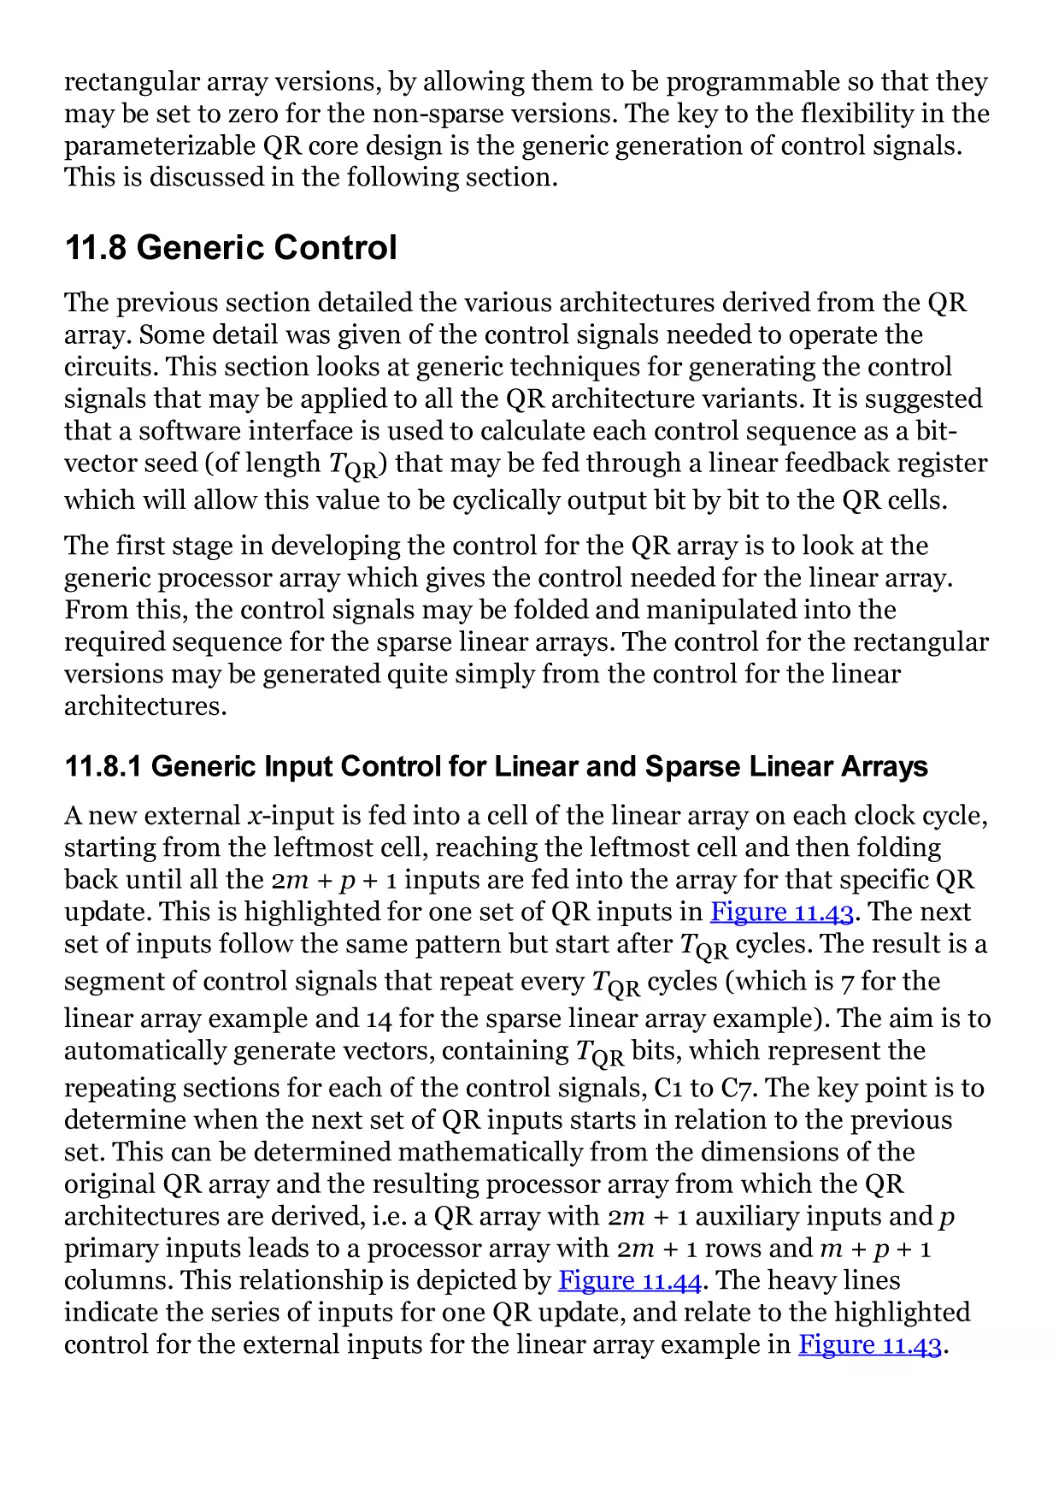 11.8 Generic Control